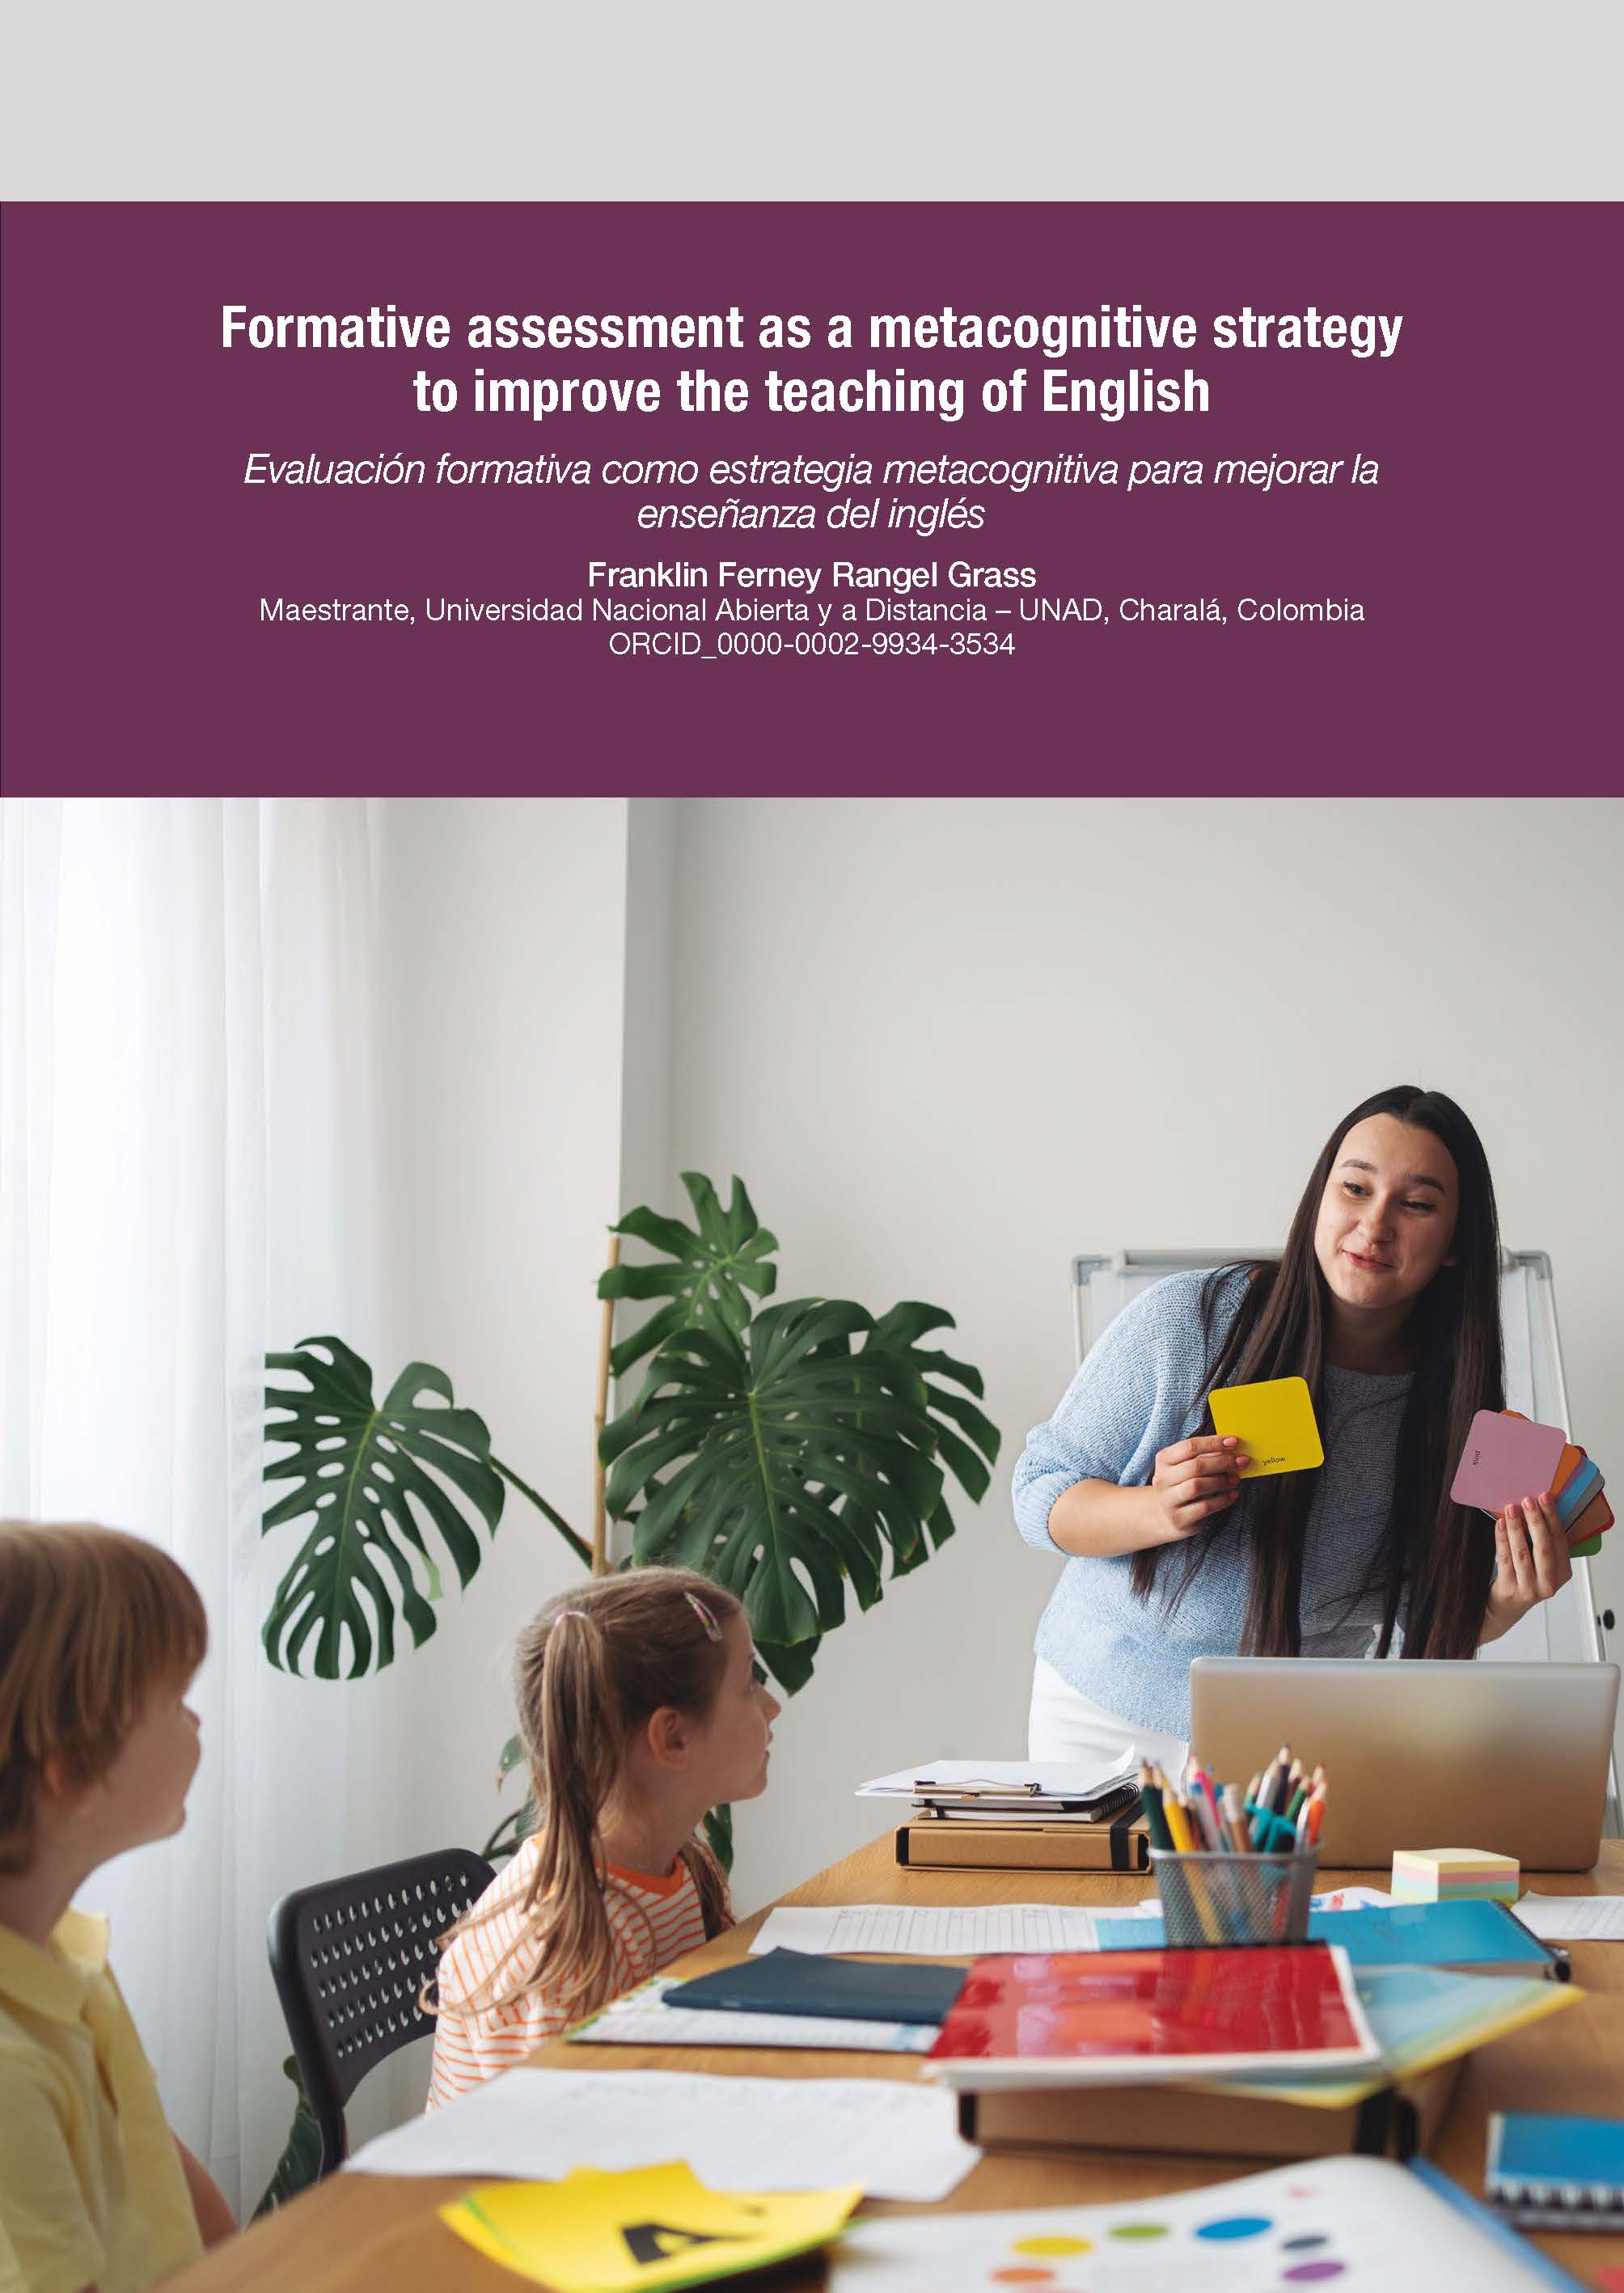 Evaluación formativa como estrategia metacognitiva para mejorar la enseñanza del inglés